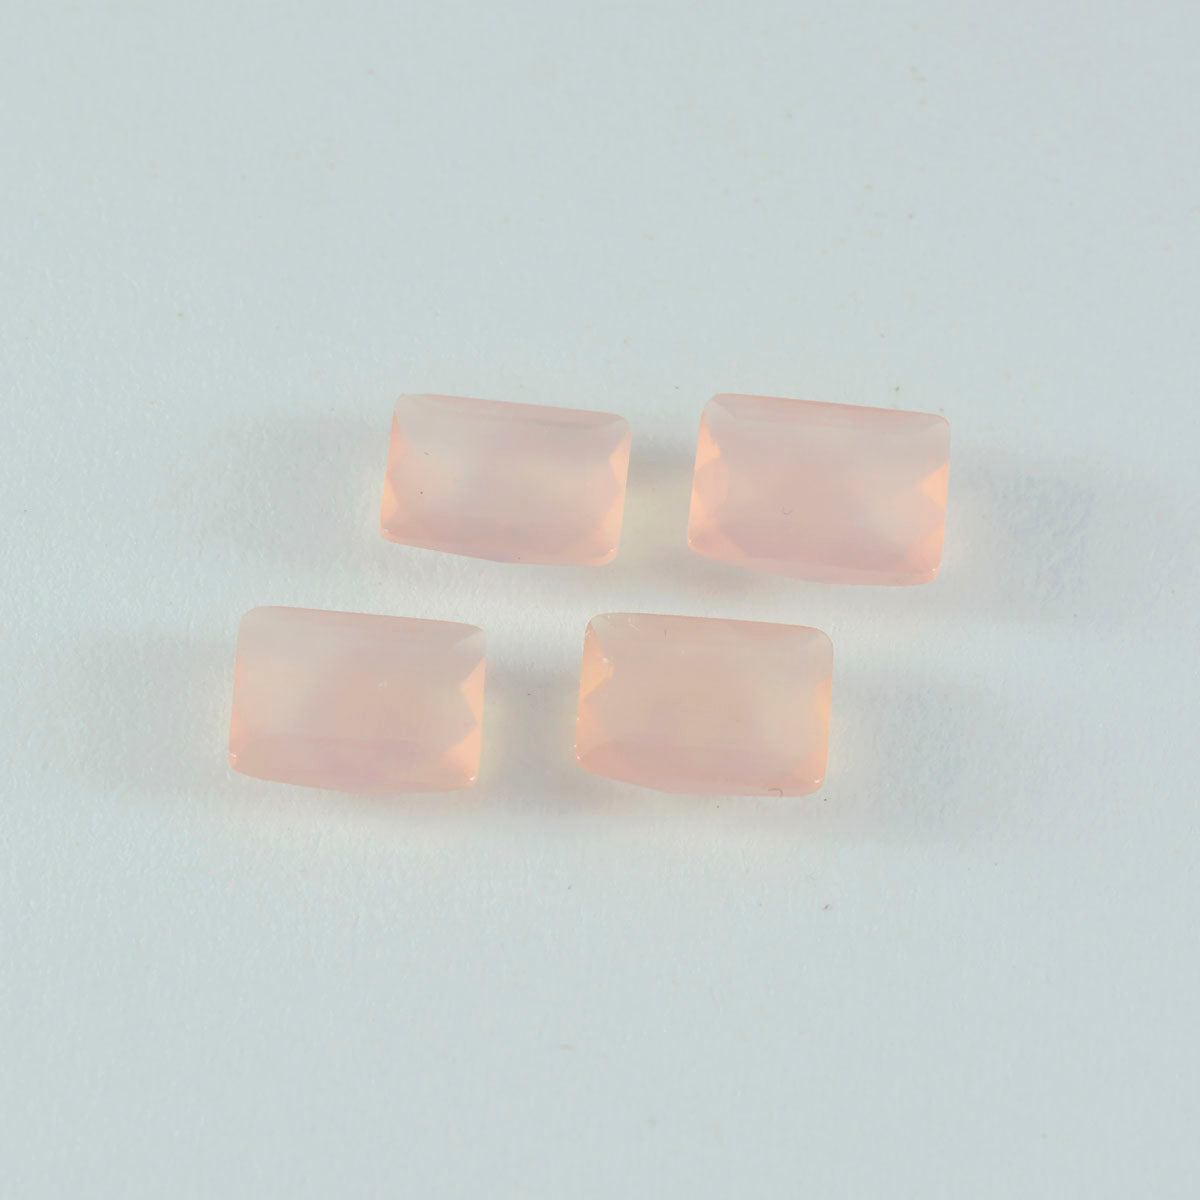 riyogems 1 шт., розовый кварц, граненый 7x9 мм, восьмиугольная форма, красивый качественный свободный драгоценный камень